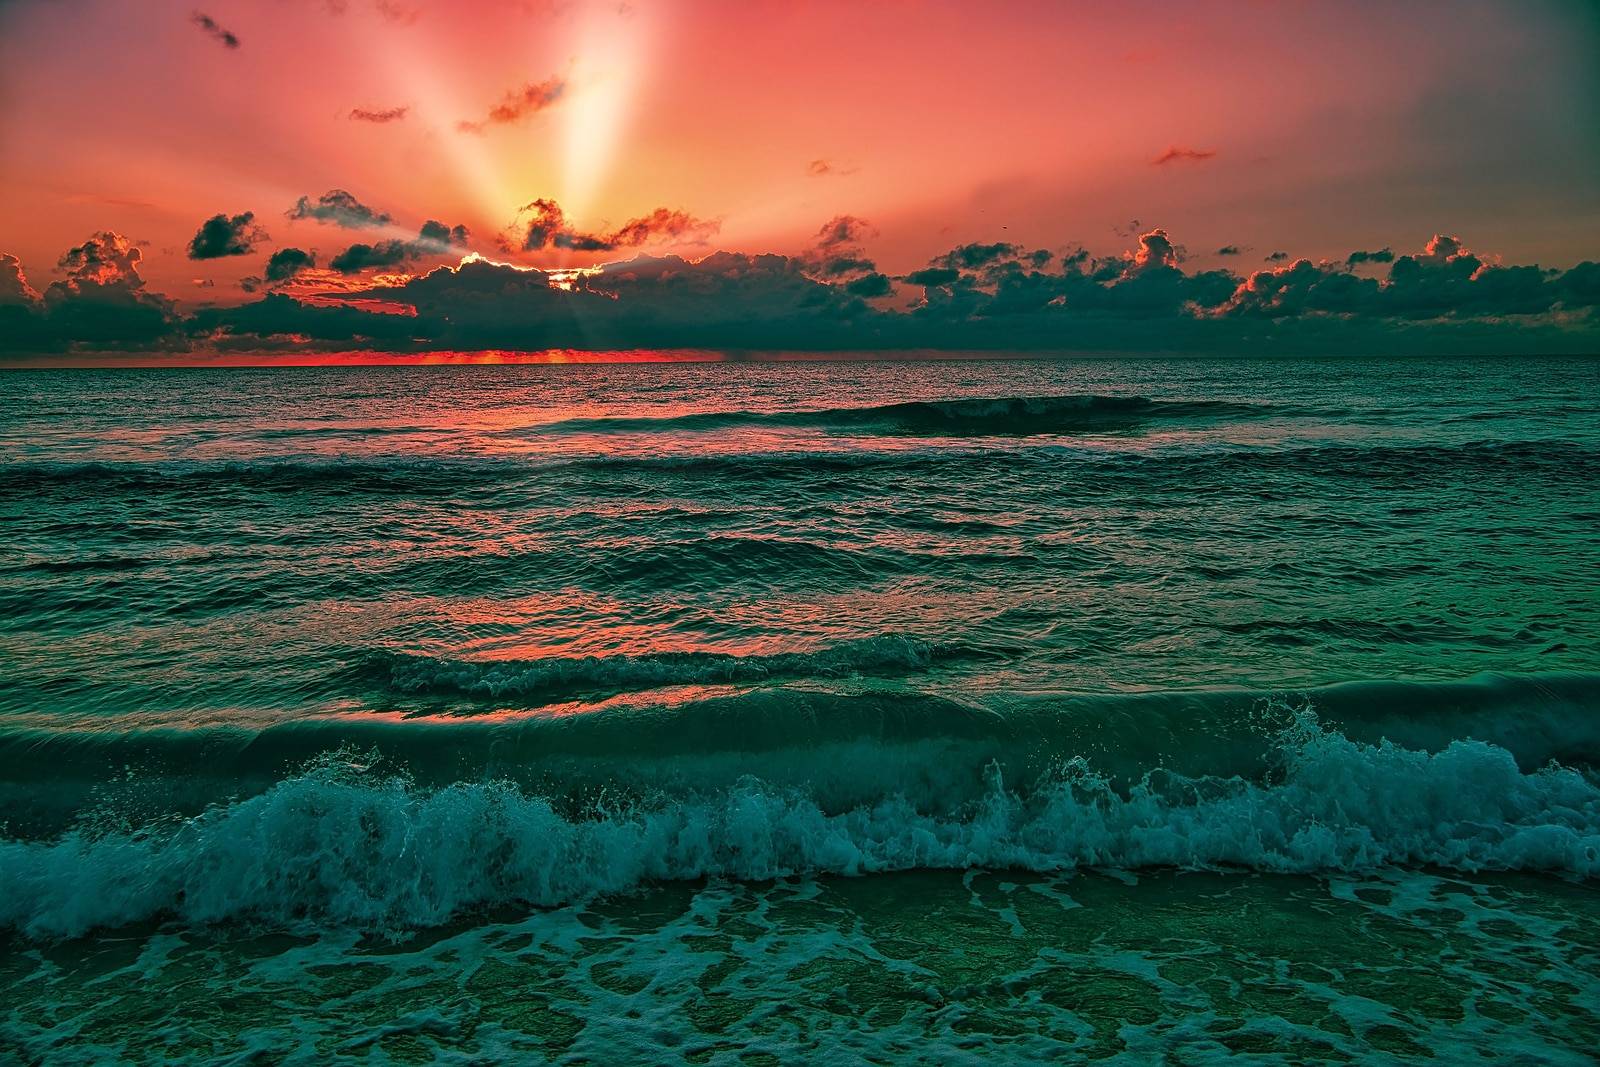 Beautiful sunrise over the Caribbean Sea